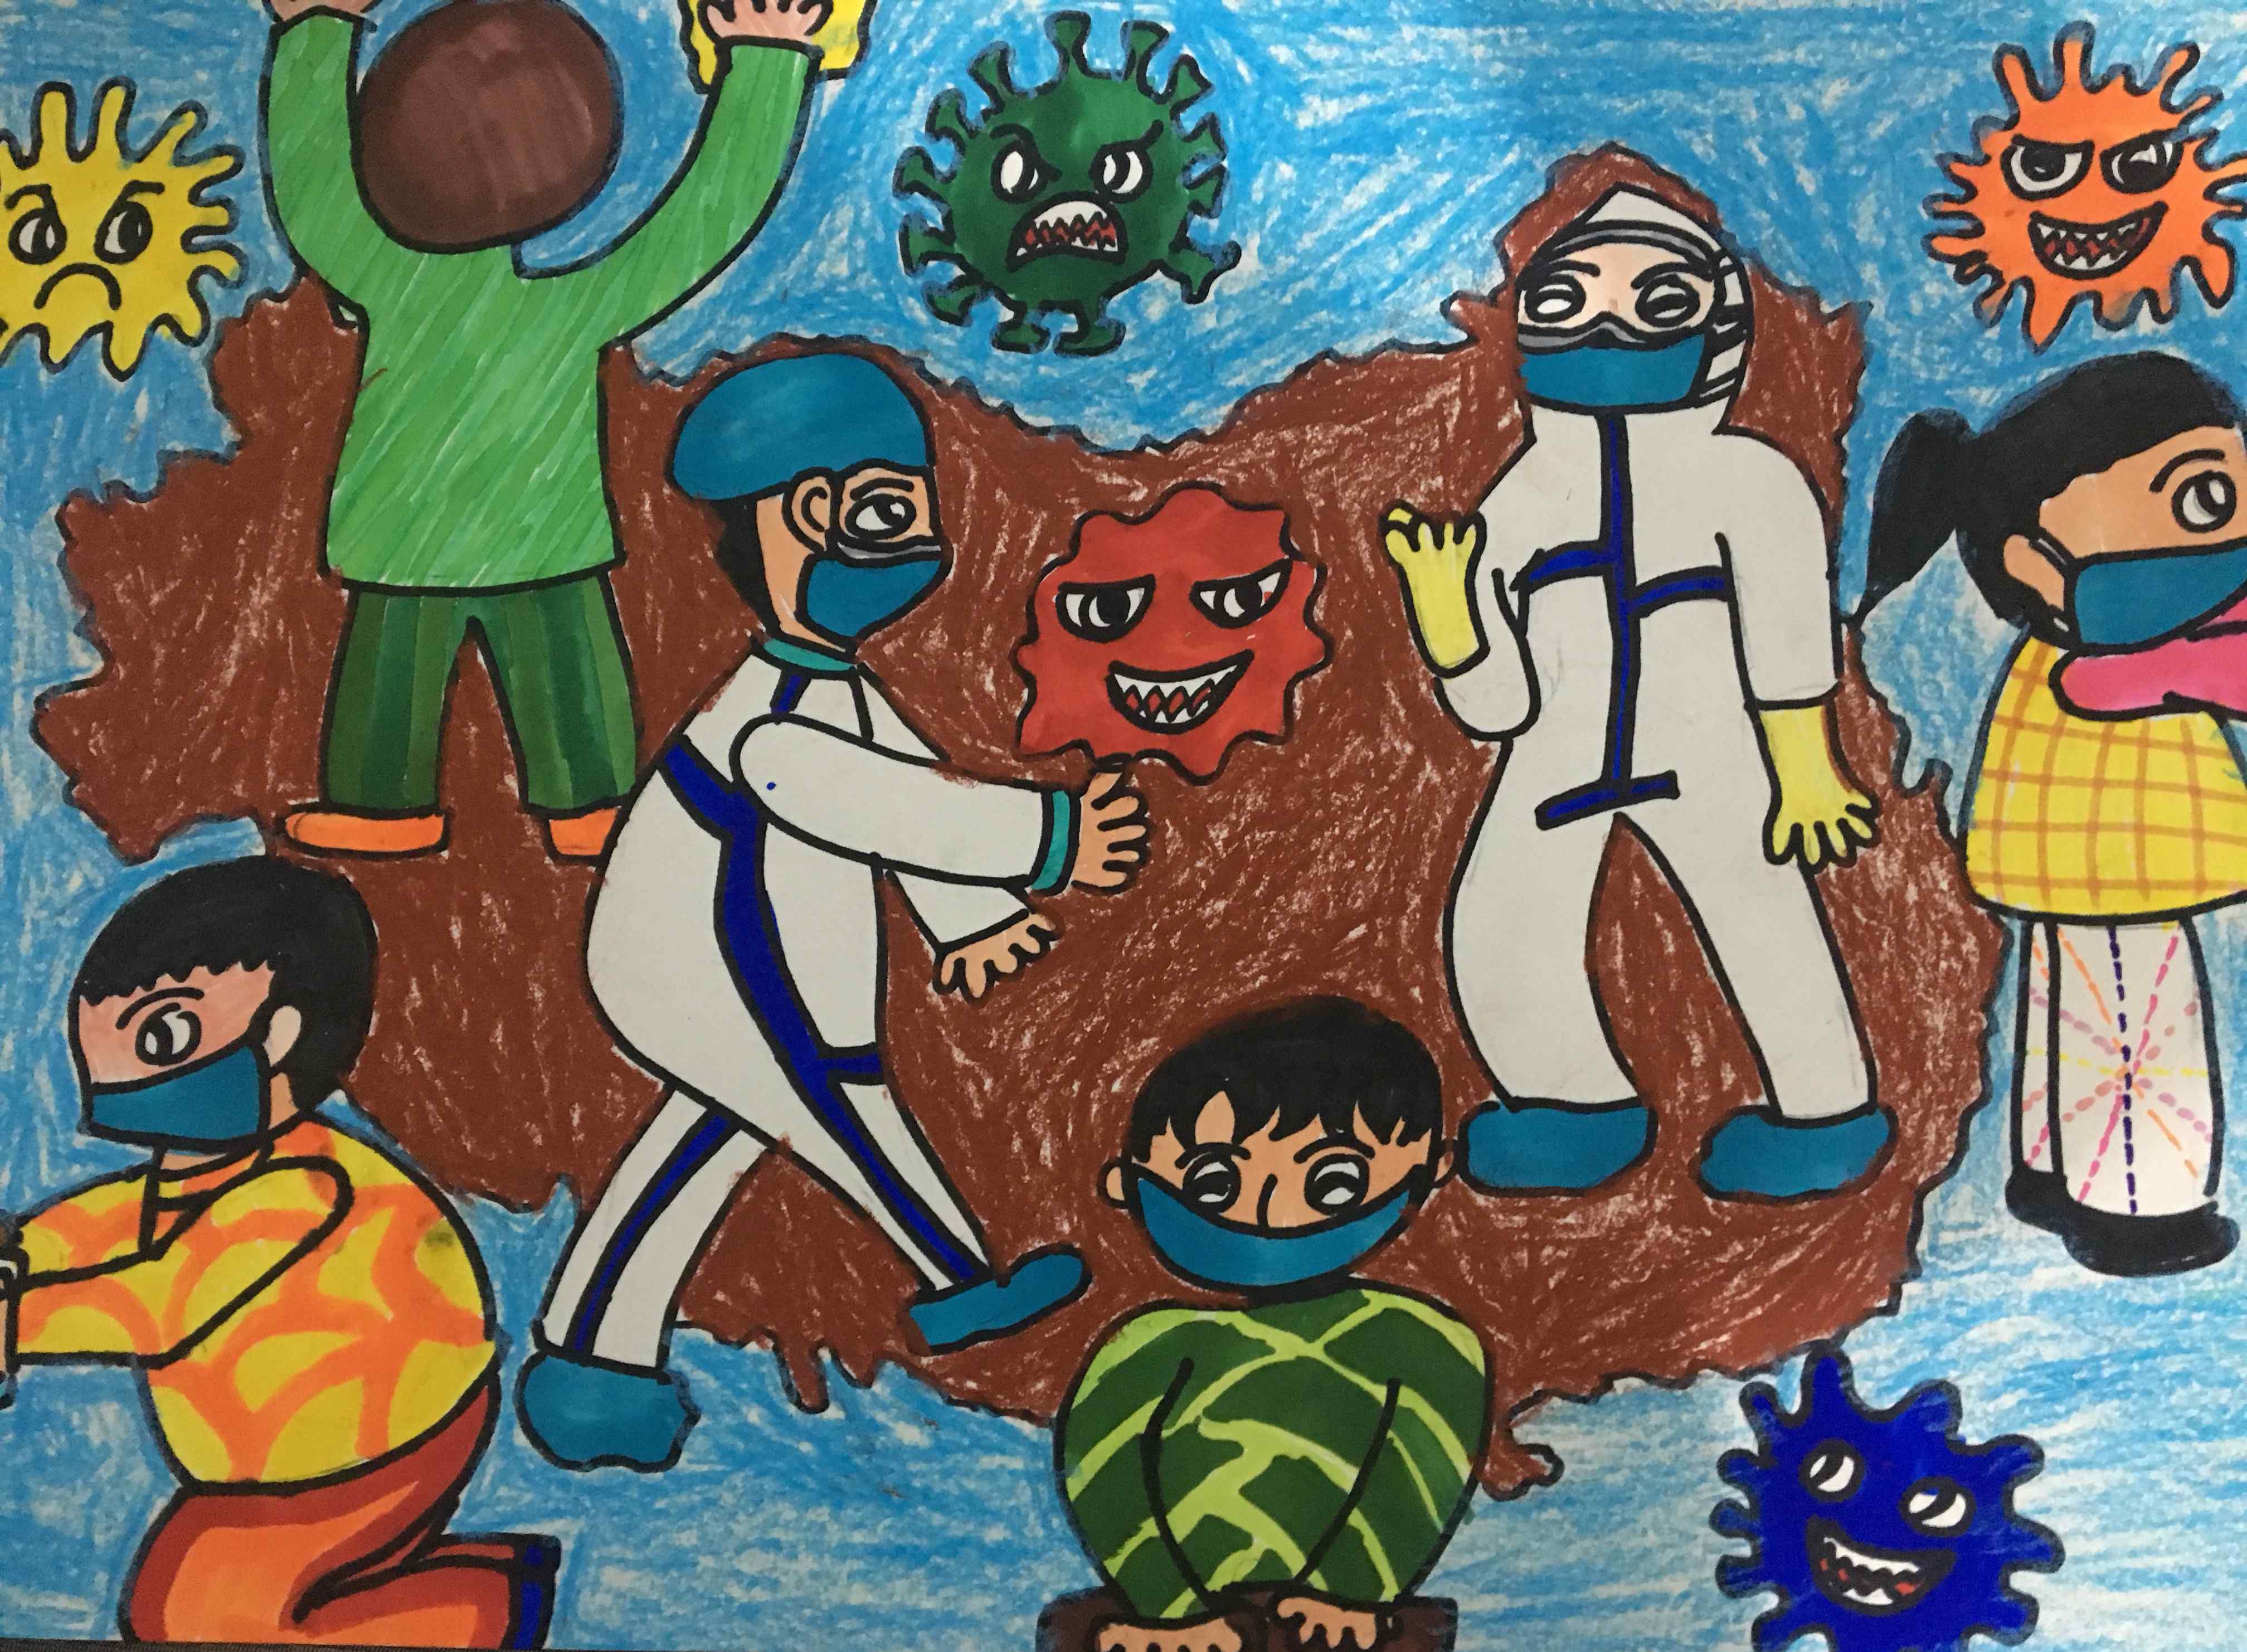 以清明节为主题的画 黄石江东中心小学"我们的节日一清明节"主题儿童画作品展